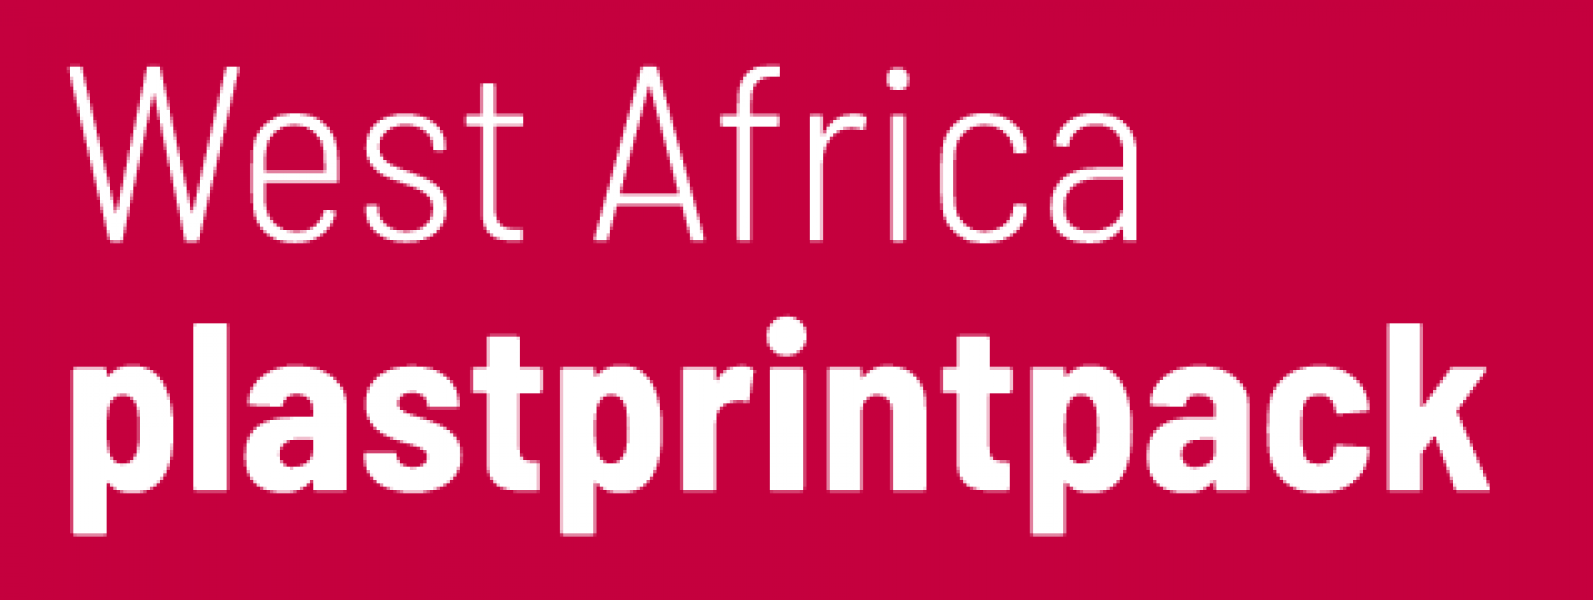 Logotipo de PlastPrintPack West Africa